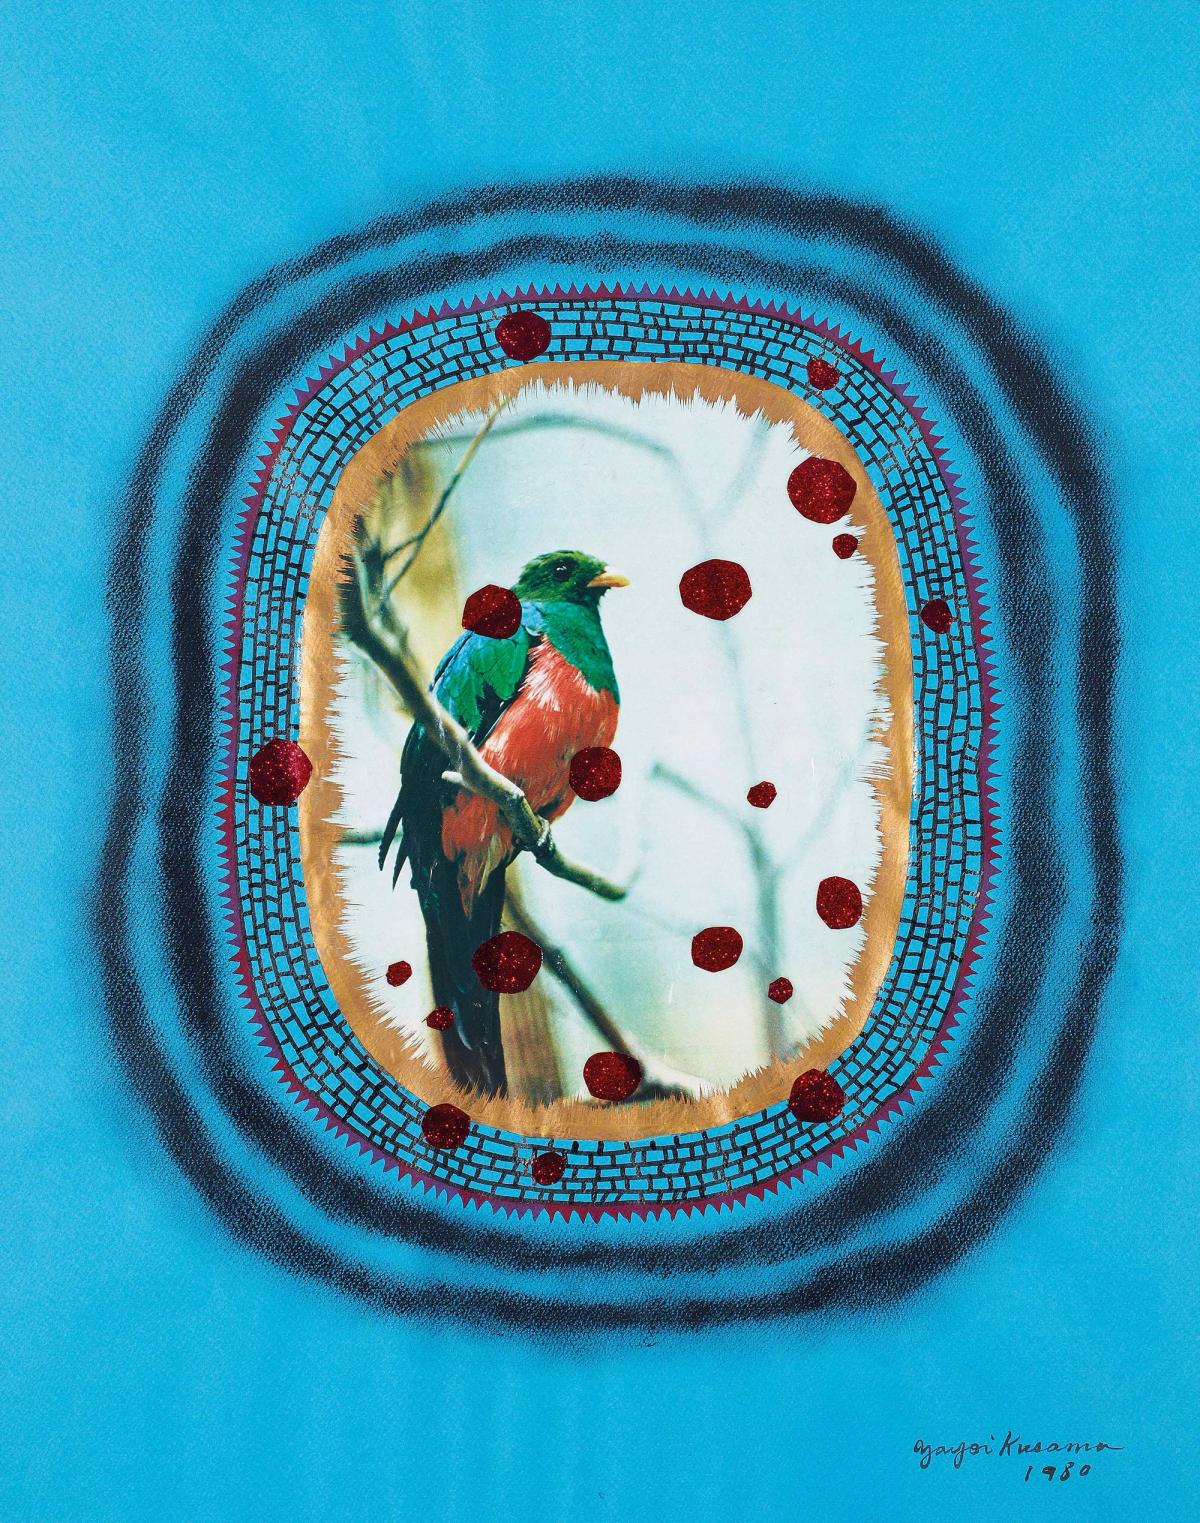 Yayoi Kusama, Bird, 1980, collage, pastel, gouache et encre sur papier.
© Courtesy Galerie Messine